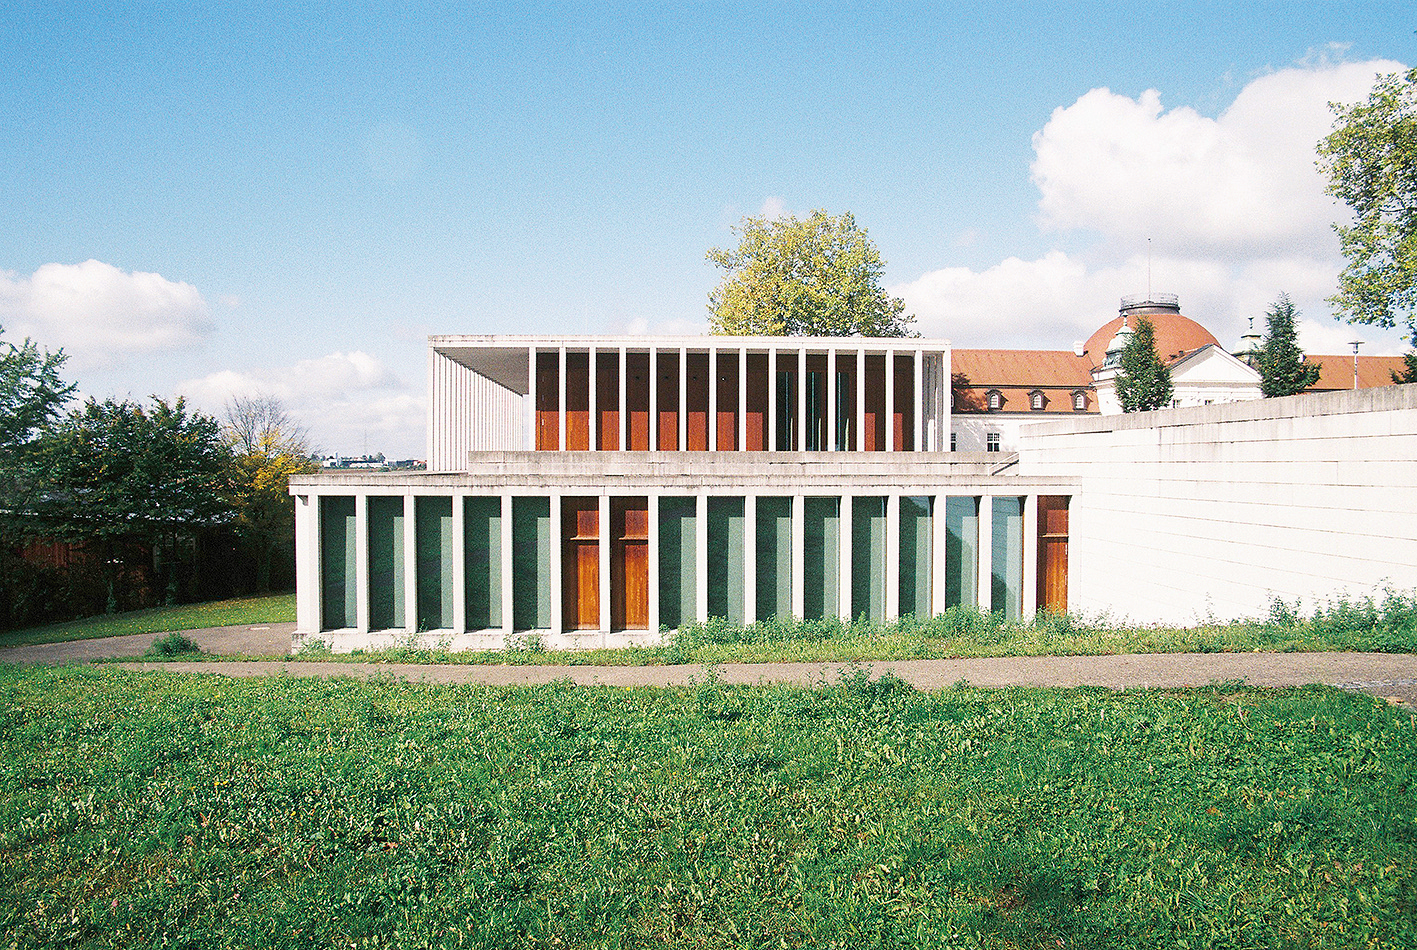 V mieste narodenia spisovateľa Schillera, v Marbachu am Neckar, postavil David Chipperfield Múzeum modernej literatúry ako svoju prvú stavbu v Nemecku. Práve v tejto krajine je v súčasnosti osobitne úspešný. (Foto: Marek Peťovský)